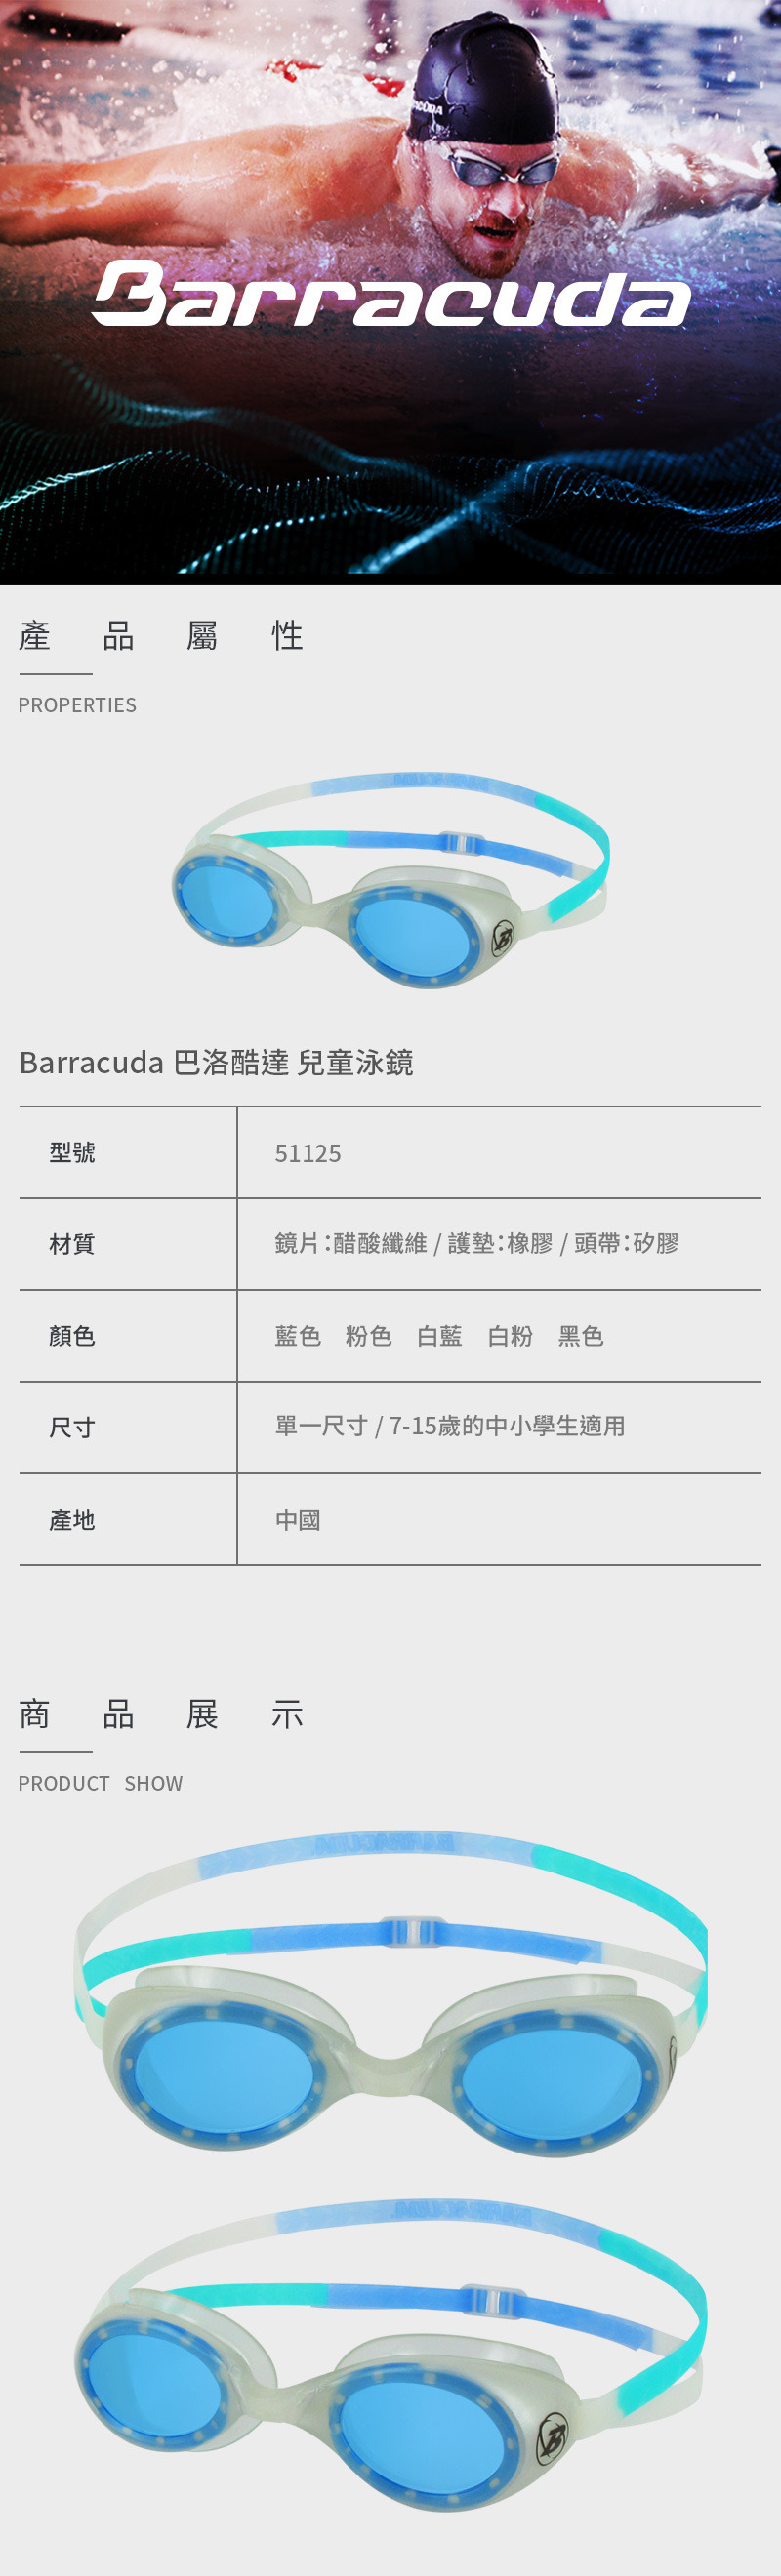 【Barracuda 巴洛酷達】兒童泳鏡 51125